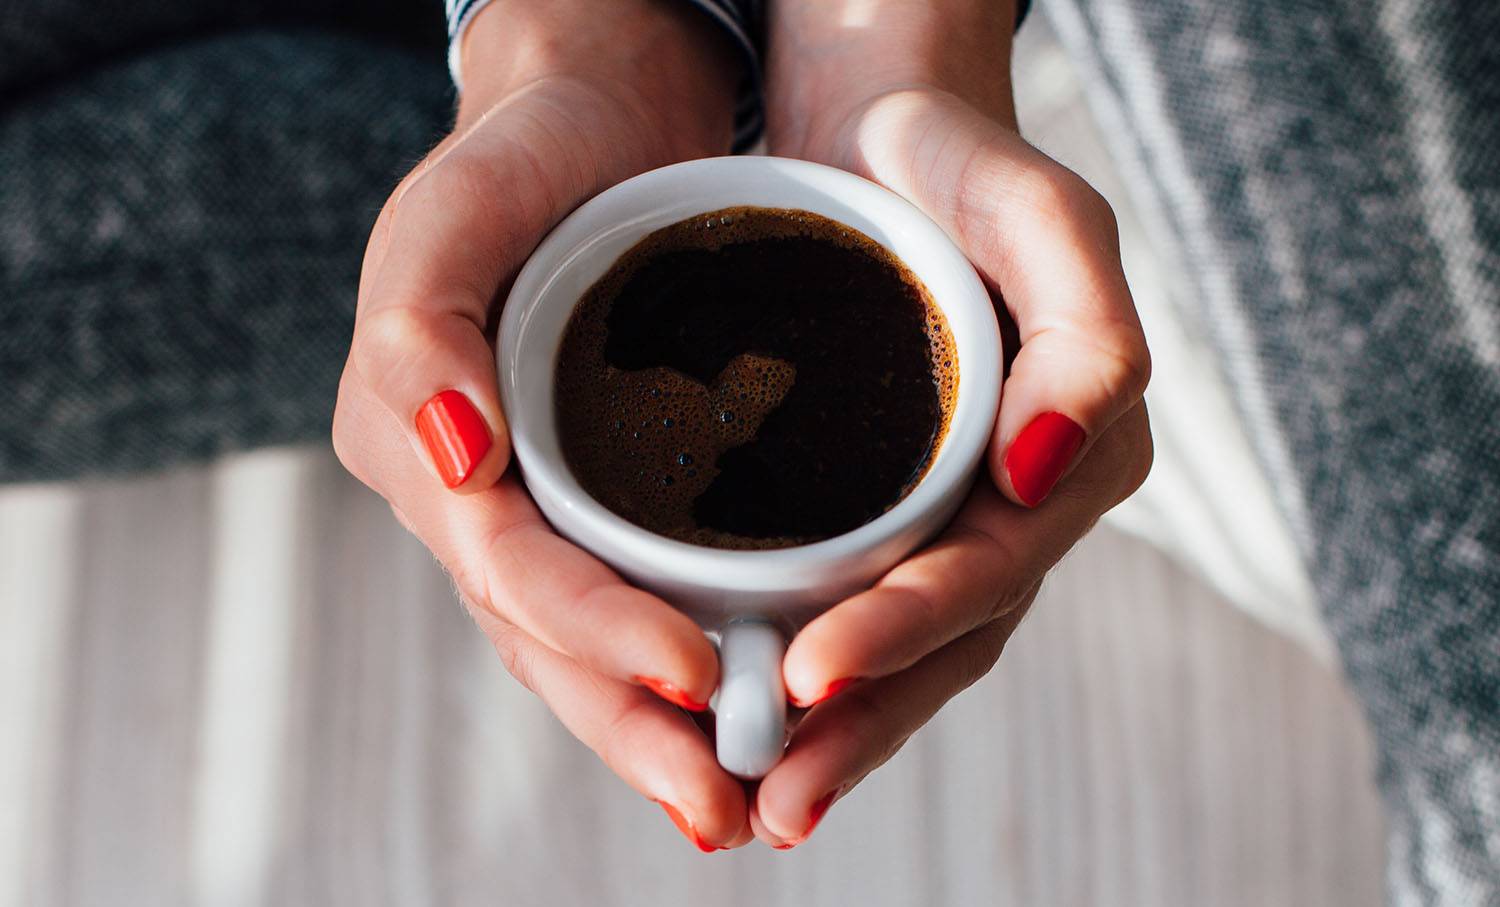 Влияет ли кофе на потенцию мужчины и как? вредное воздействие и снижение либидо